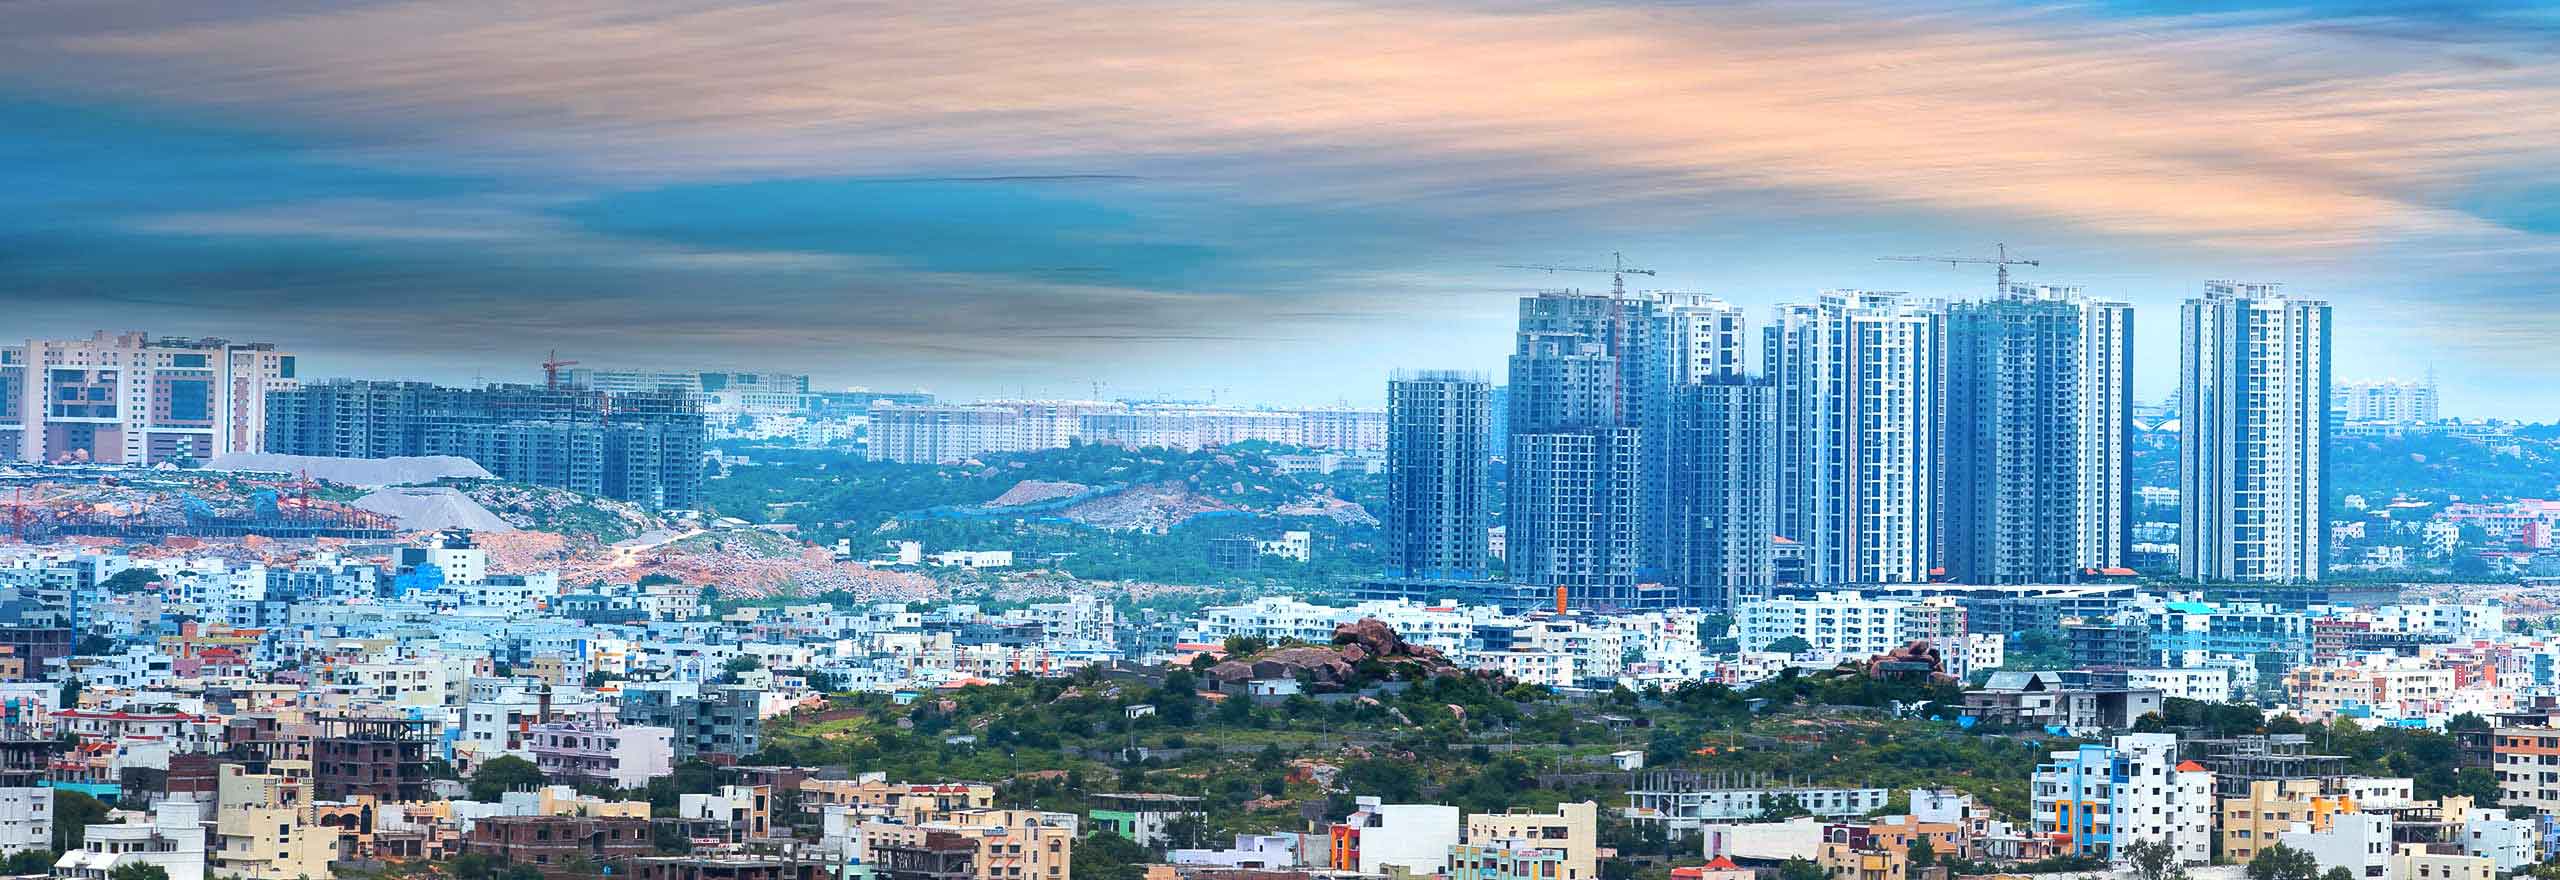 El Centro de Capacitación de Hexagon en la India (HCCI) en comparación con el paisaje urbano, mostrando el tamaño y la oportunidad que ofrece.